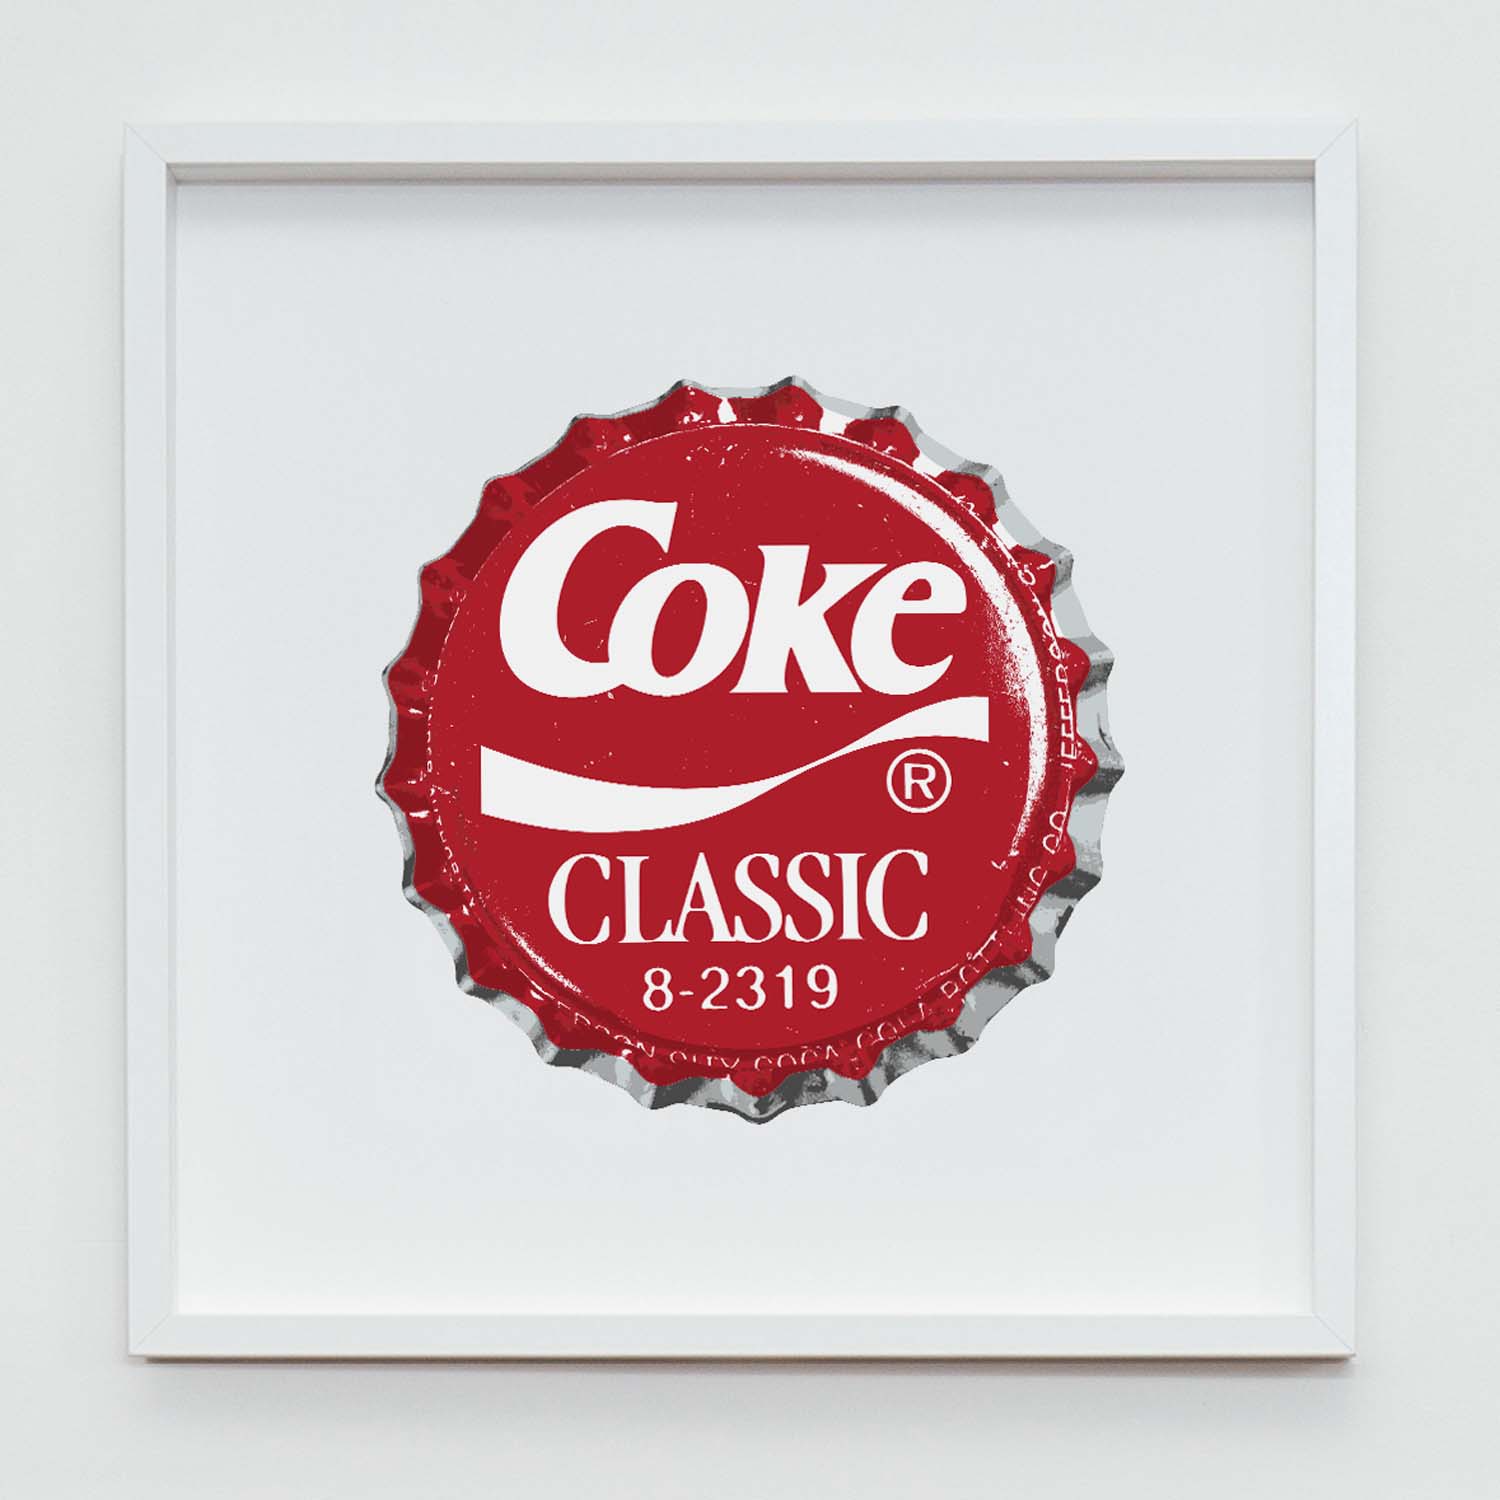 TL_GoPop_Frame_CocaCola.jpg